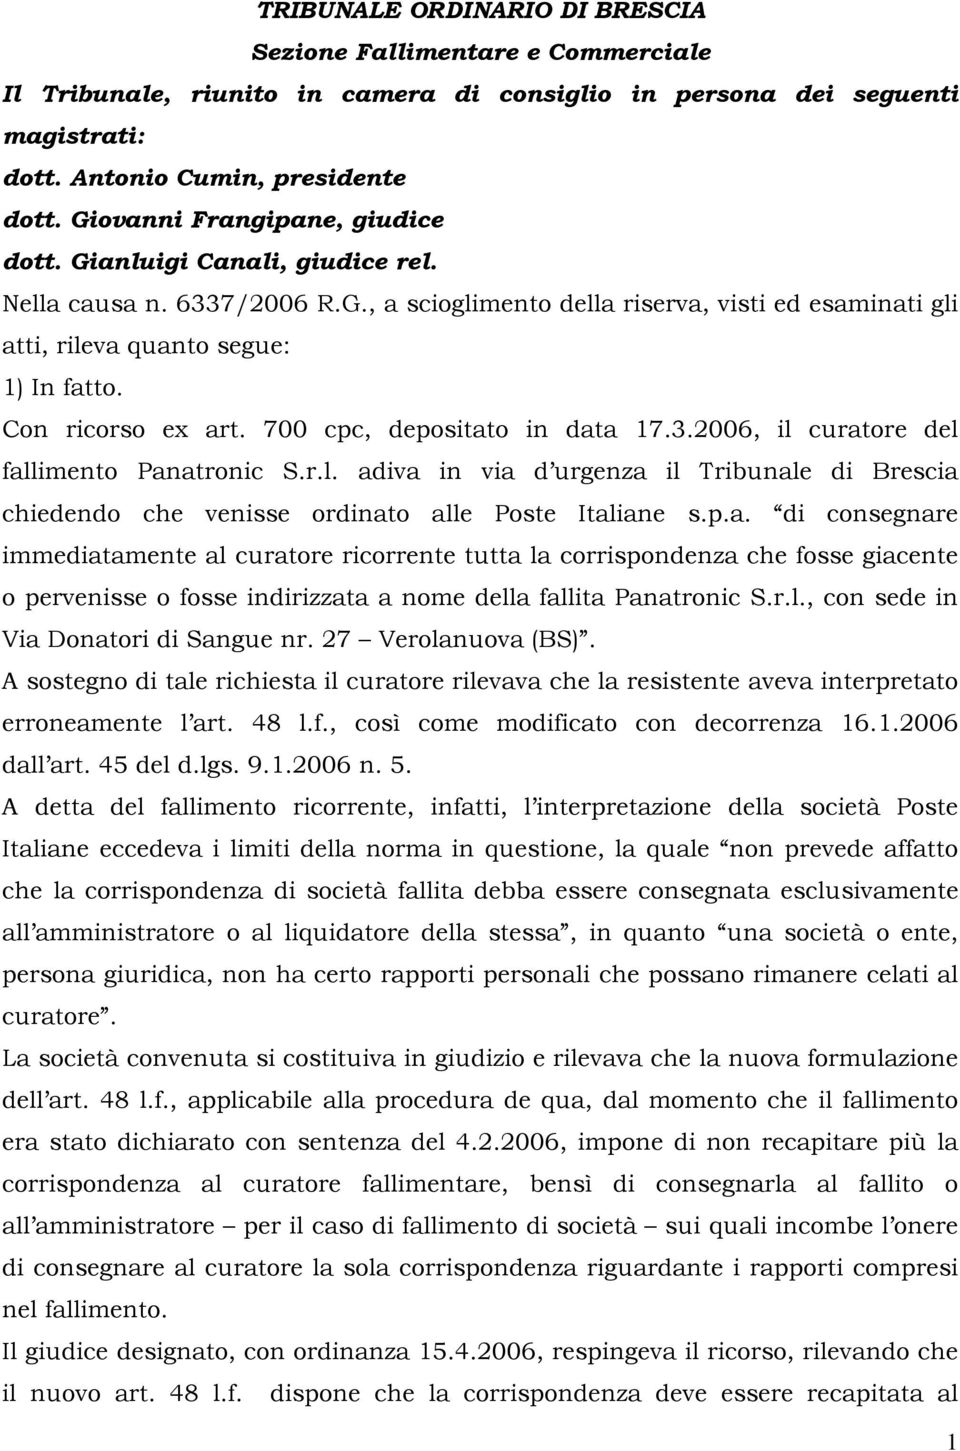 Con ricorso ex art. 700 cpc, depositato in data 17.3.2006, il curatore del fallimento Panatronic S.r.l. adiva in via d urgenza il Tribunale di Brescia chiedendo che venisse ordinato alle Poste Italiane s.